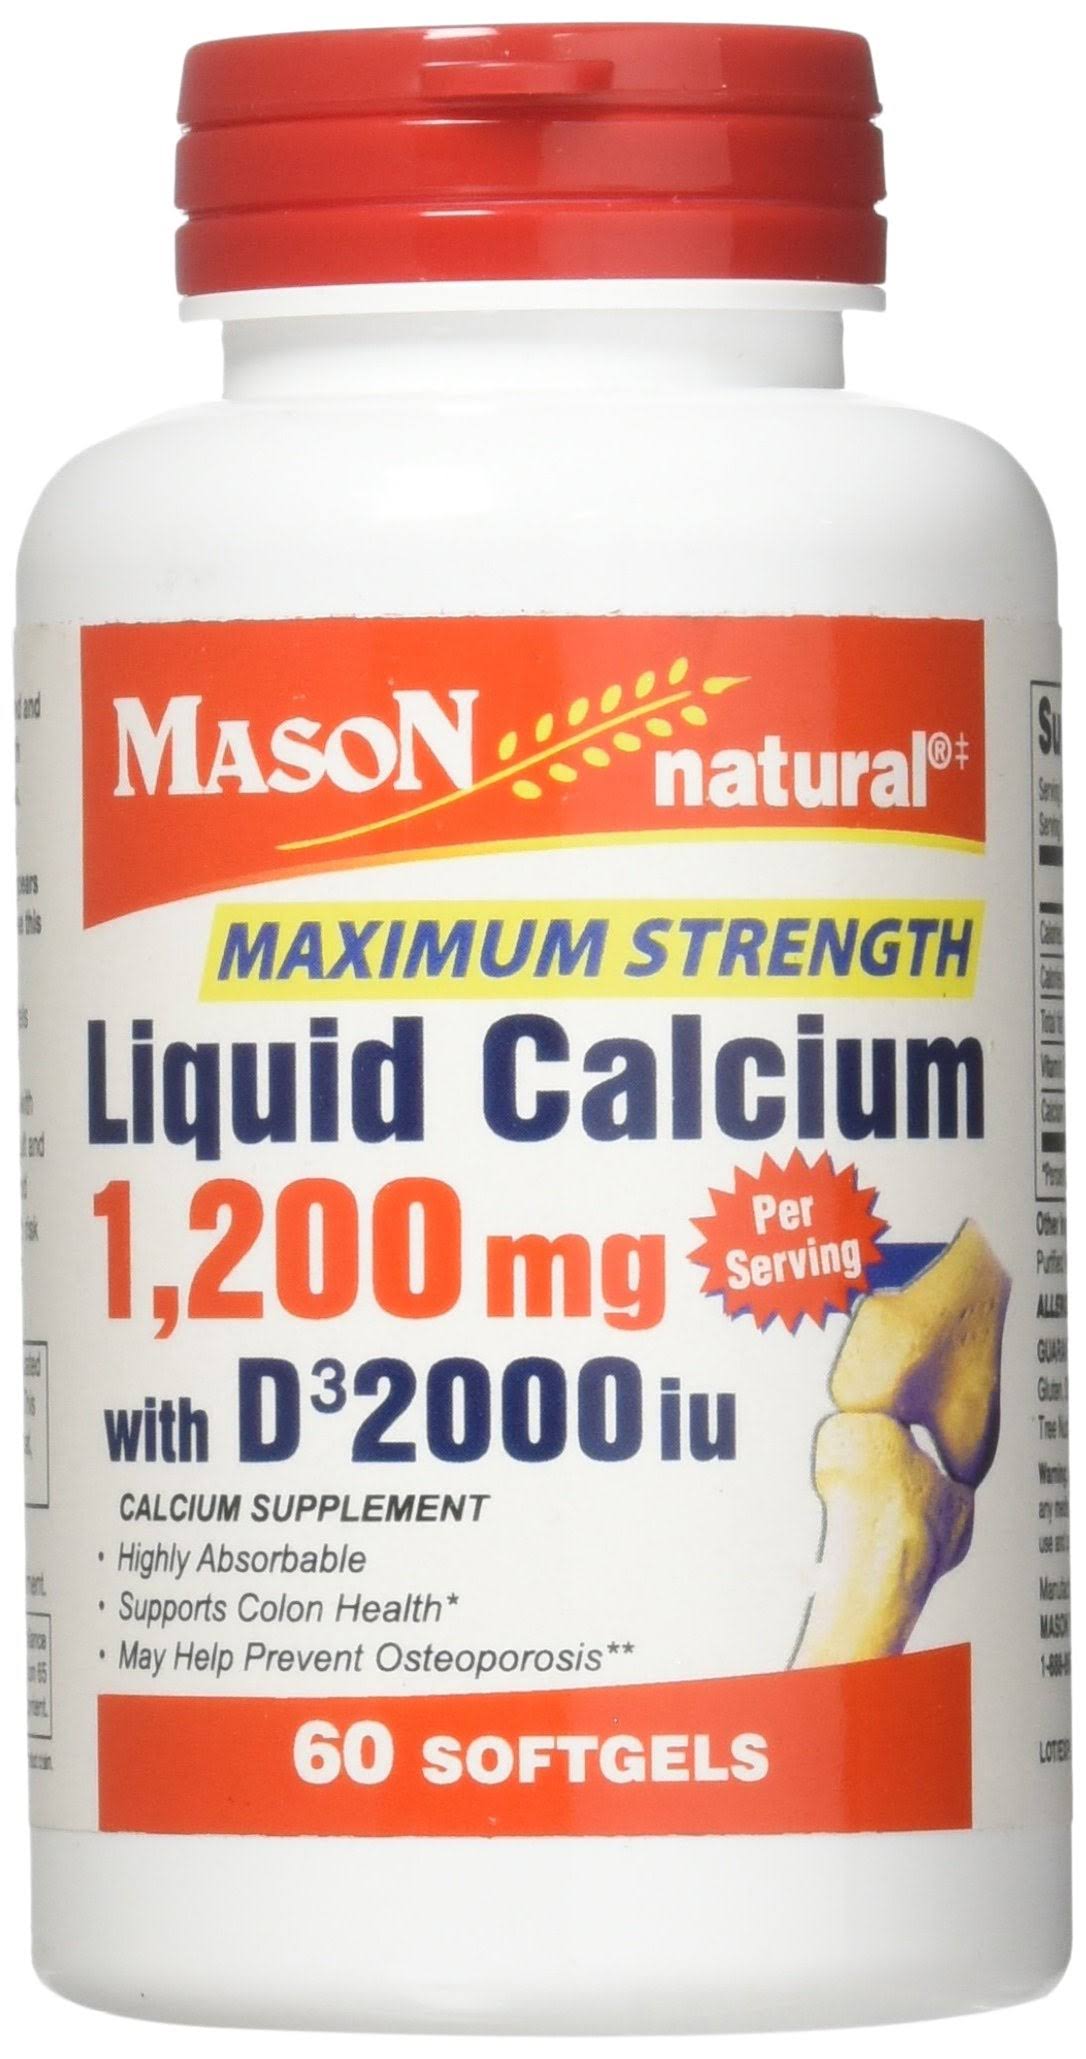 Mason Vitamins Natural Liquid Calcium Supplement - 1,200mg, 60 Softgels